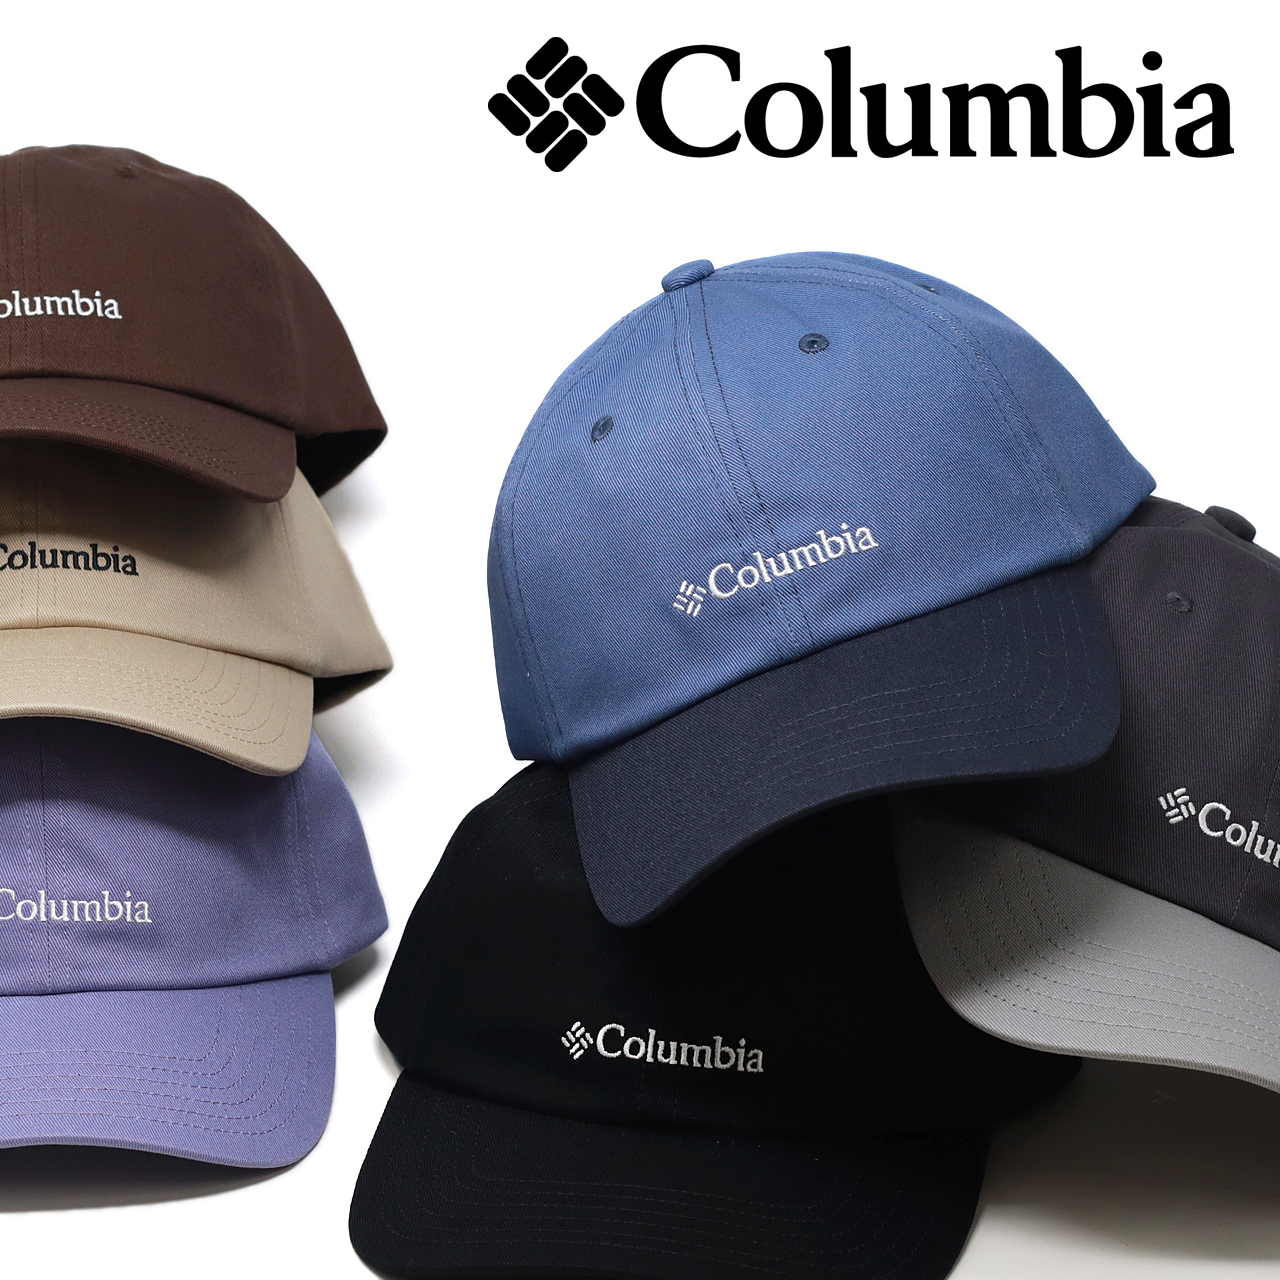 Columbia 帽子 キャップ メンズ コットンツイル サーモンパス